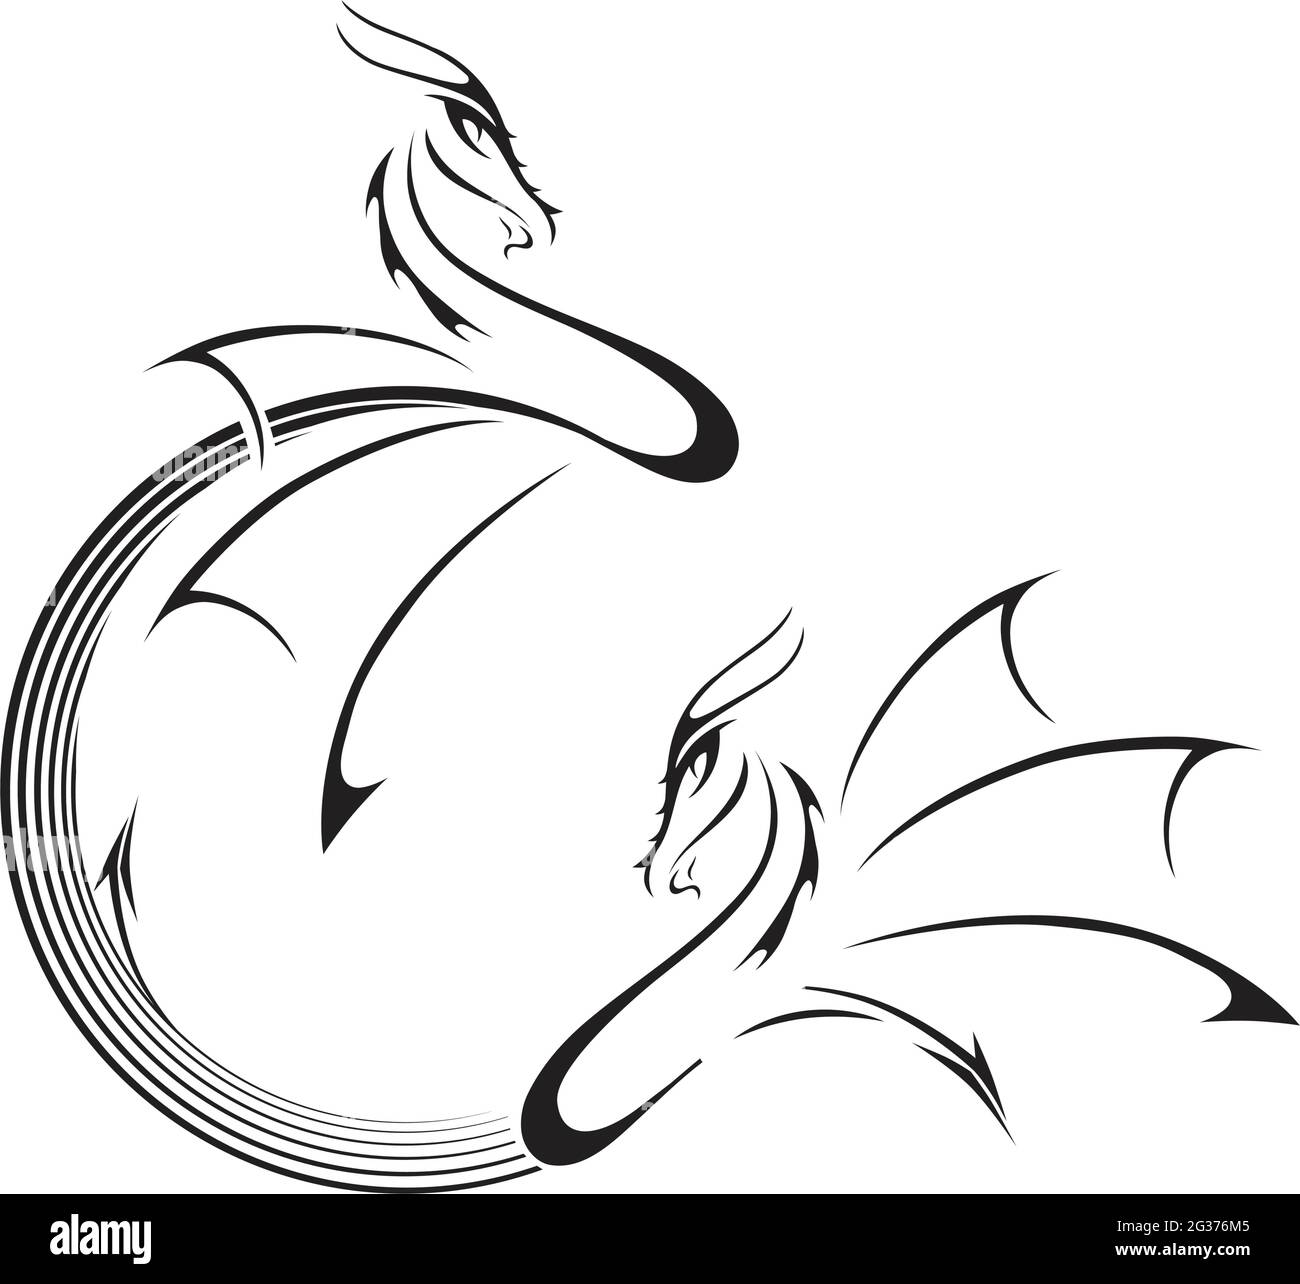 illustrazione dei draghi stilizzati Illustrazione Vettoriale